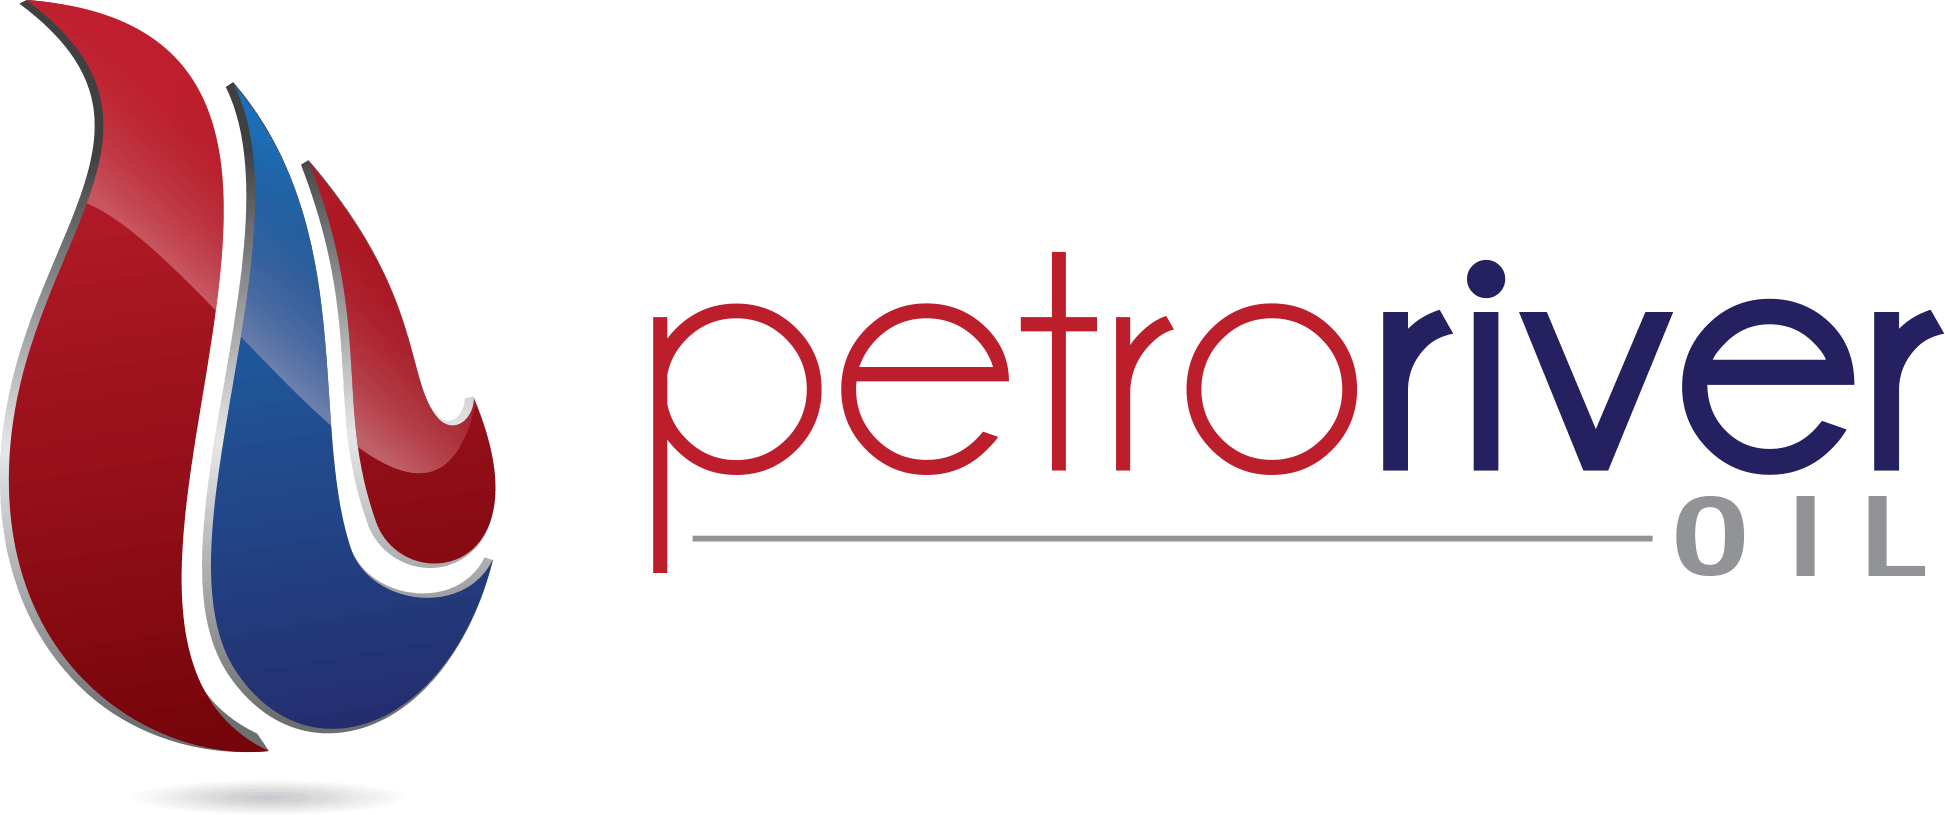 Petro Logo - Petro River Oil